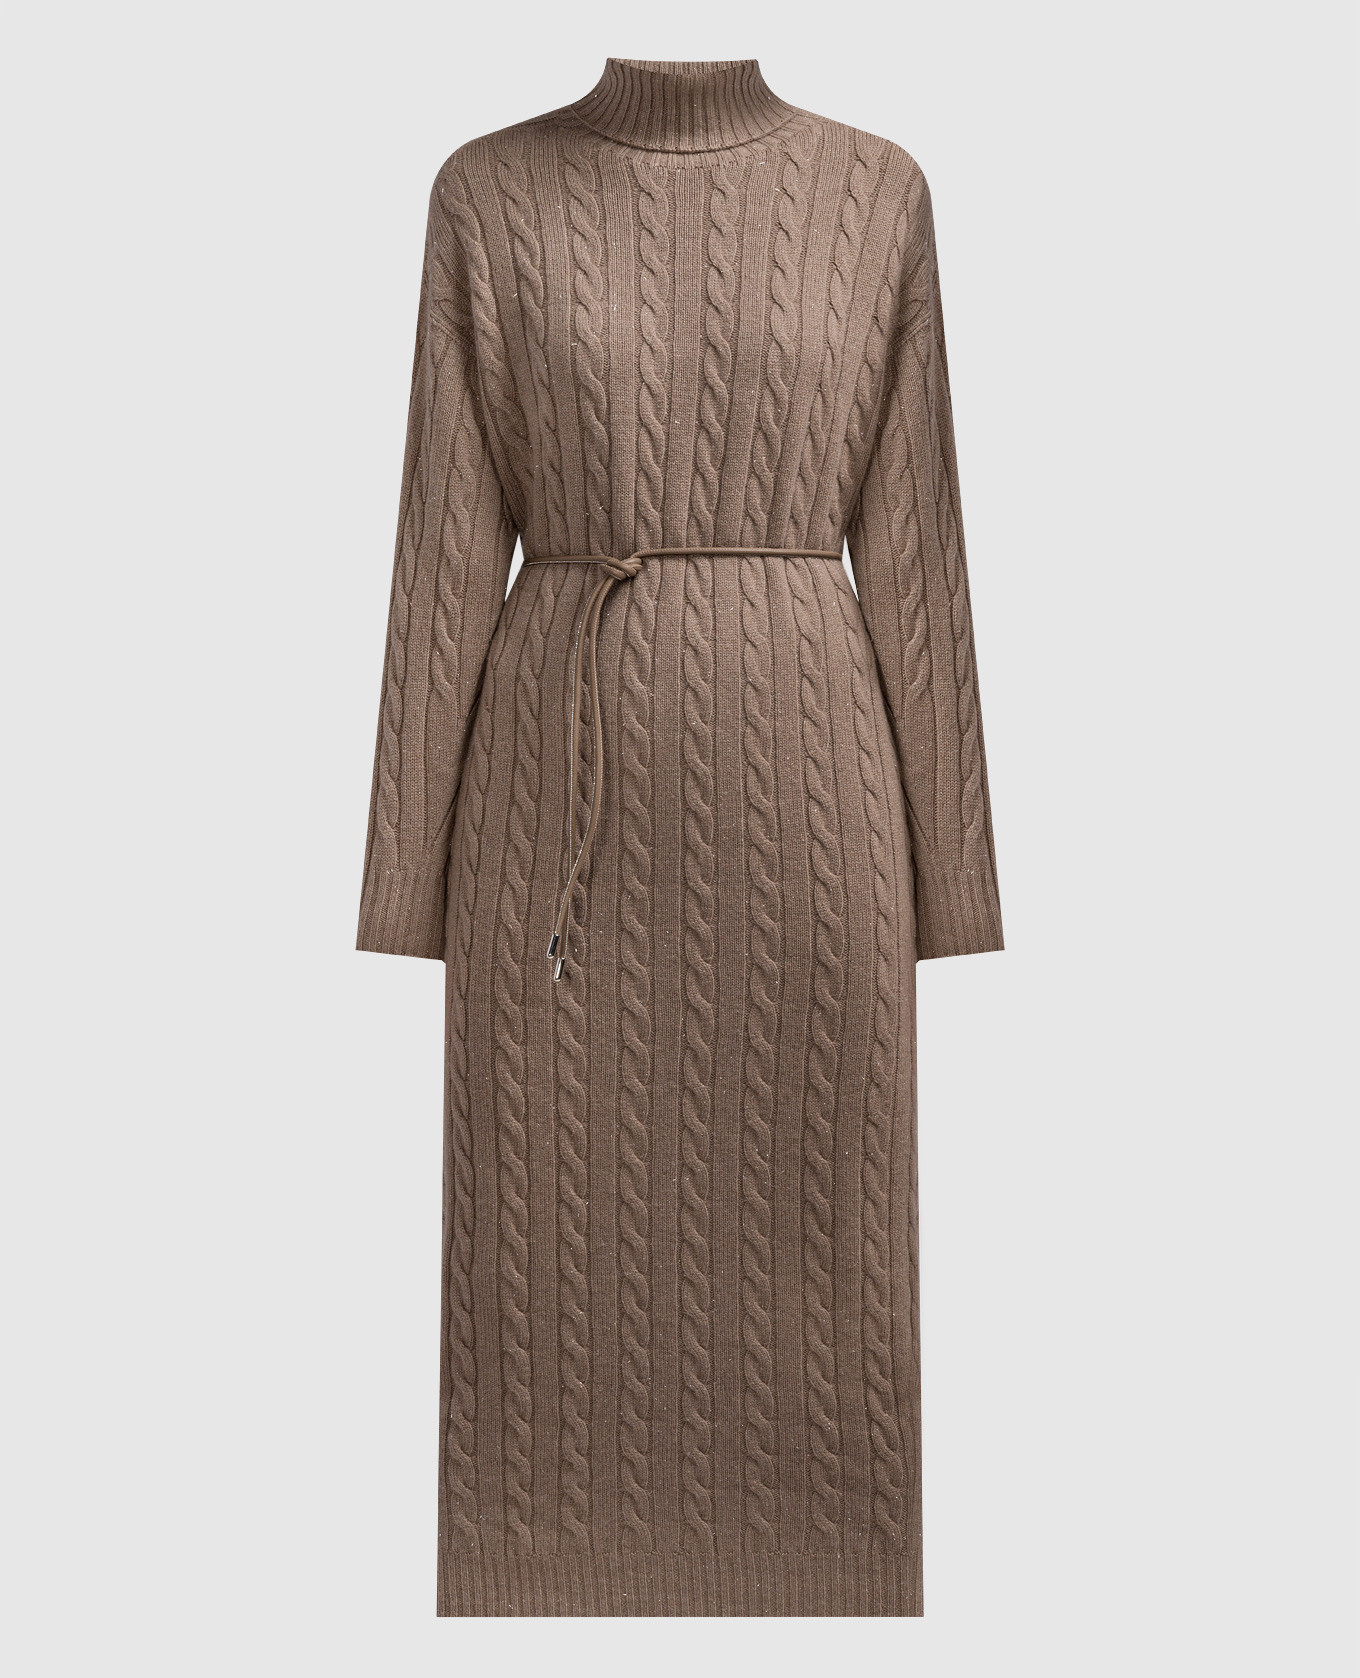 Brown midi dress in textured pattern with lurex